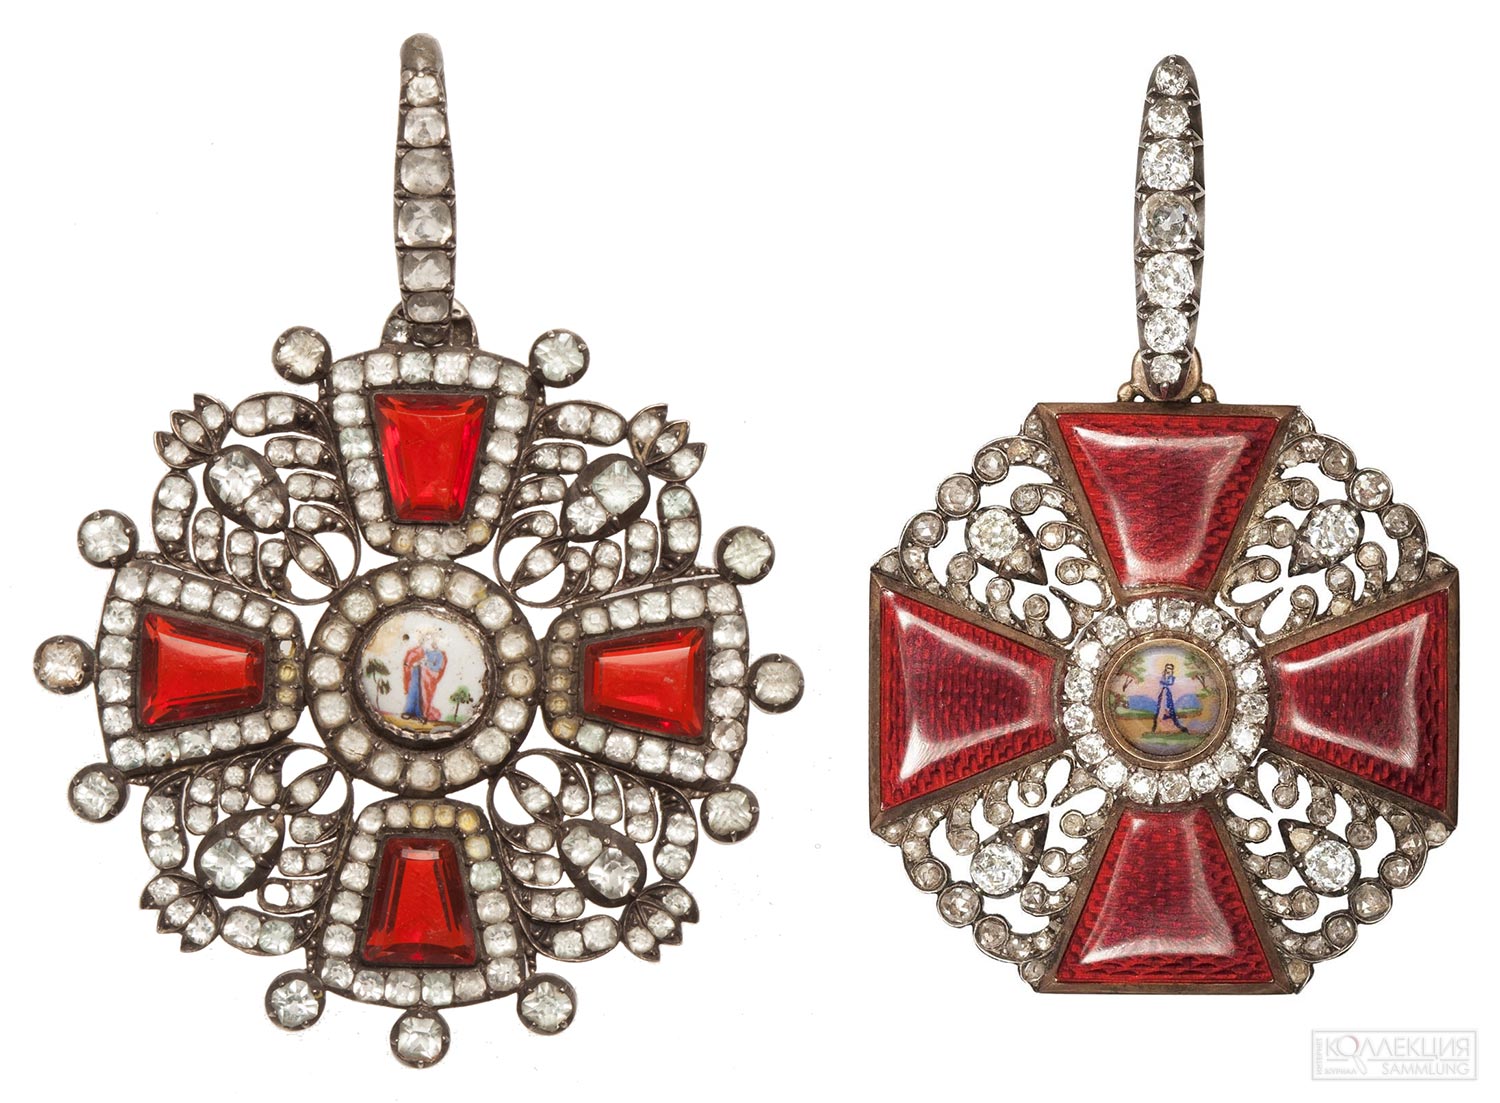 Кресты ордена Святой Анны II степени с алмазными украшениями раннего и позднего образца